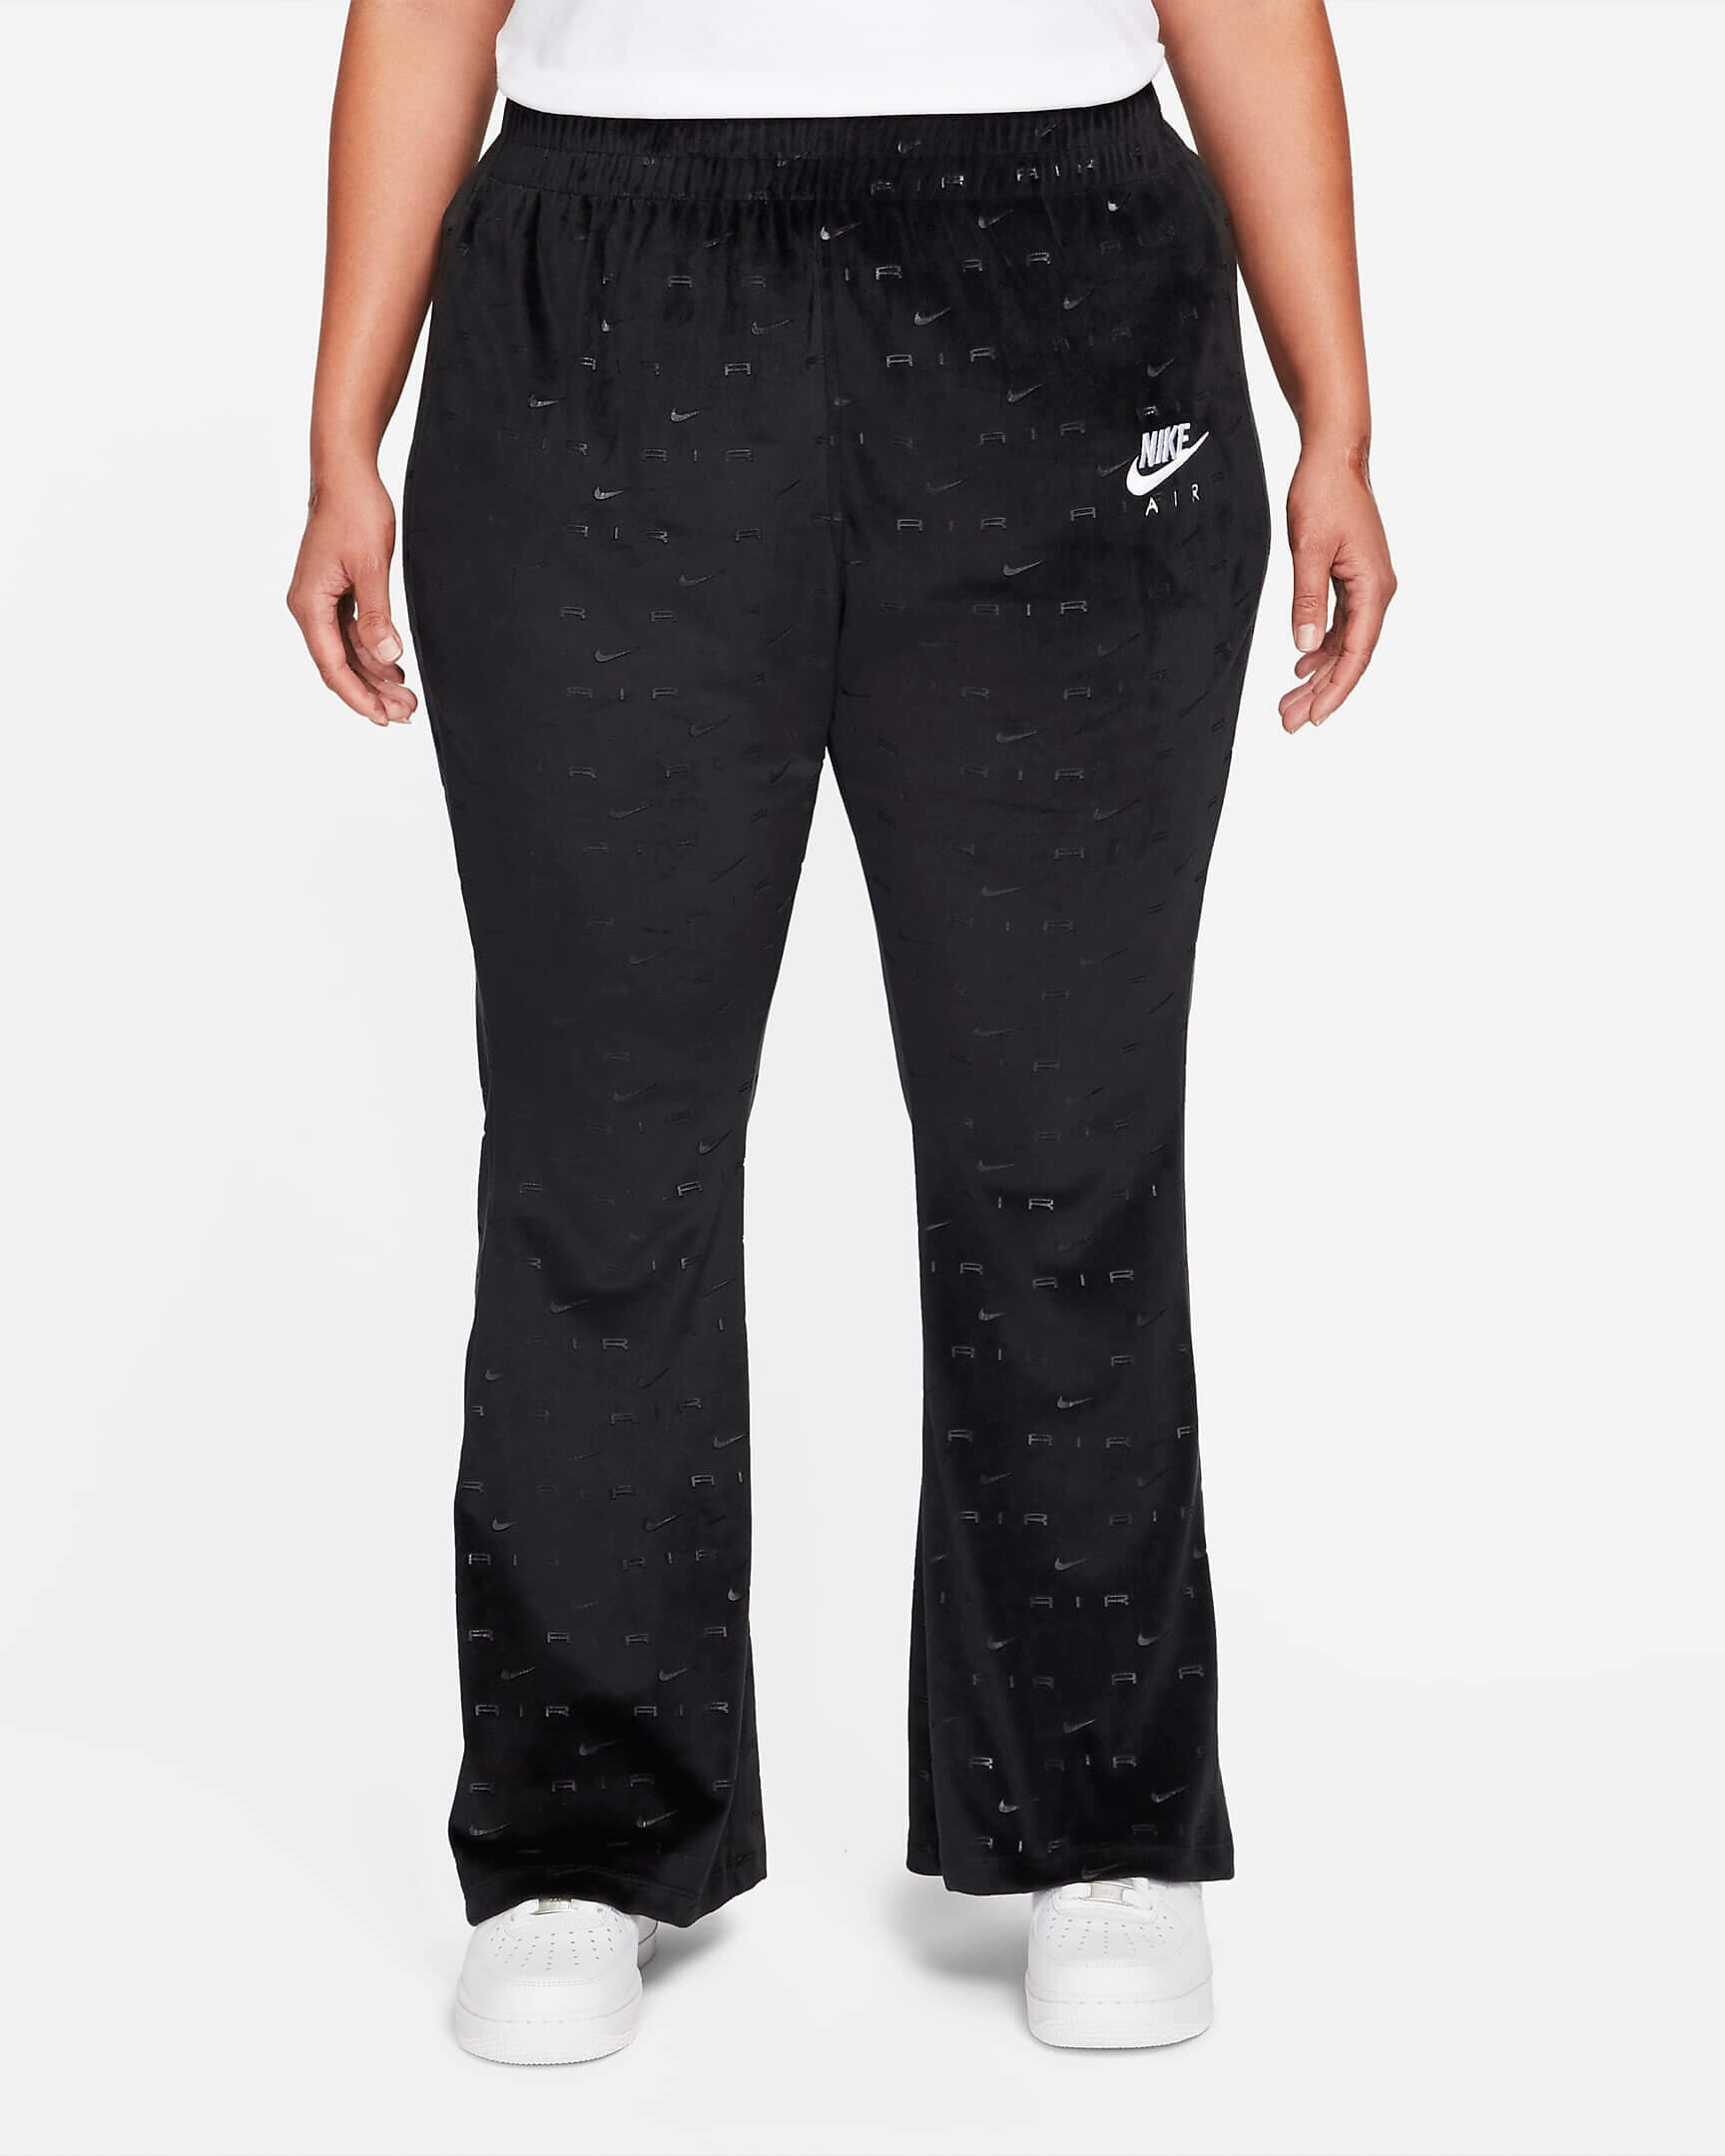 CNK-Nike-womens-velour-pants-black.jpeg